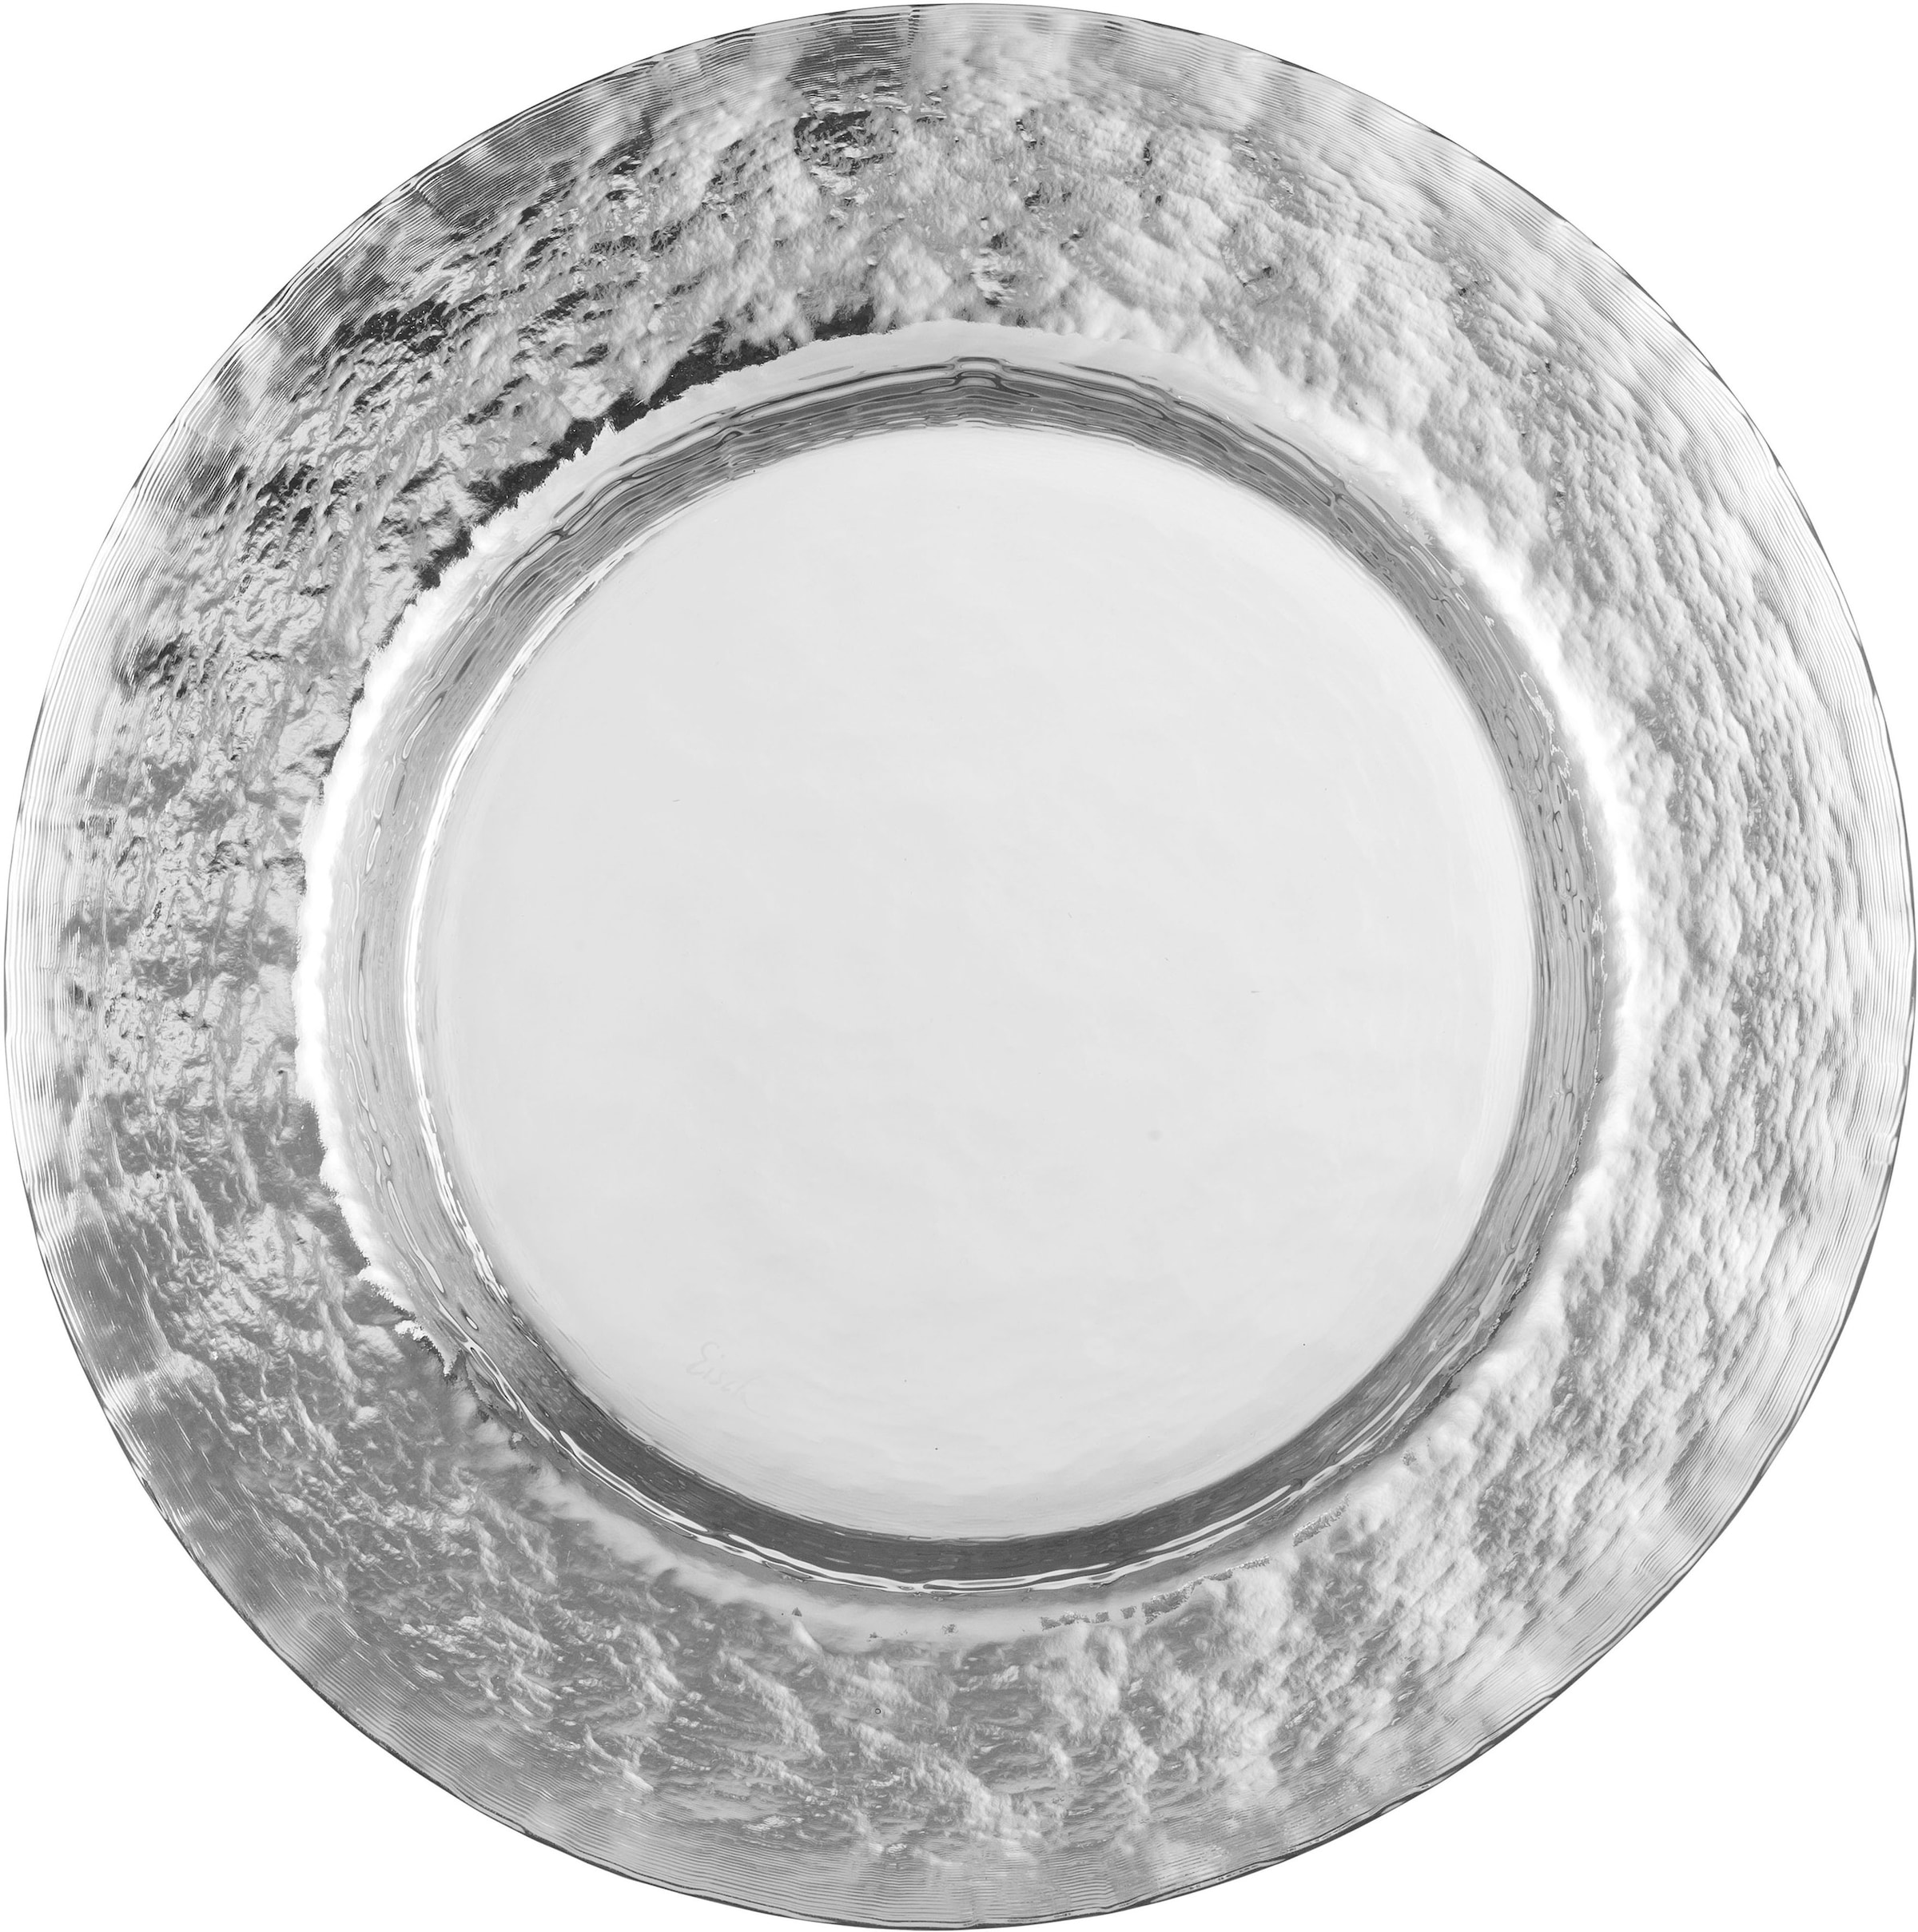 Eisch Platzteller »COLOMBO SILBER«, (1 tlg.), in Handarbeit veredelt mit silber-glänzender Glasur, Ø 34 cm